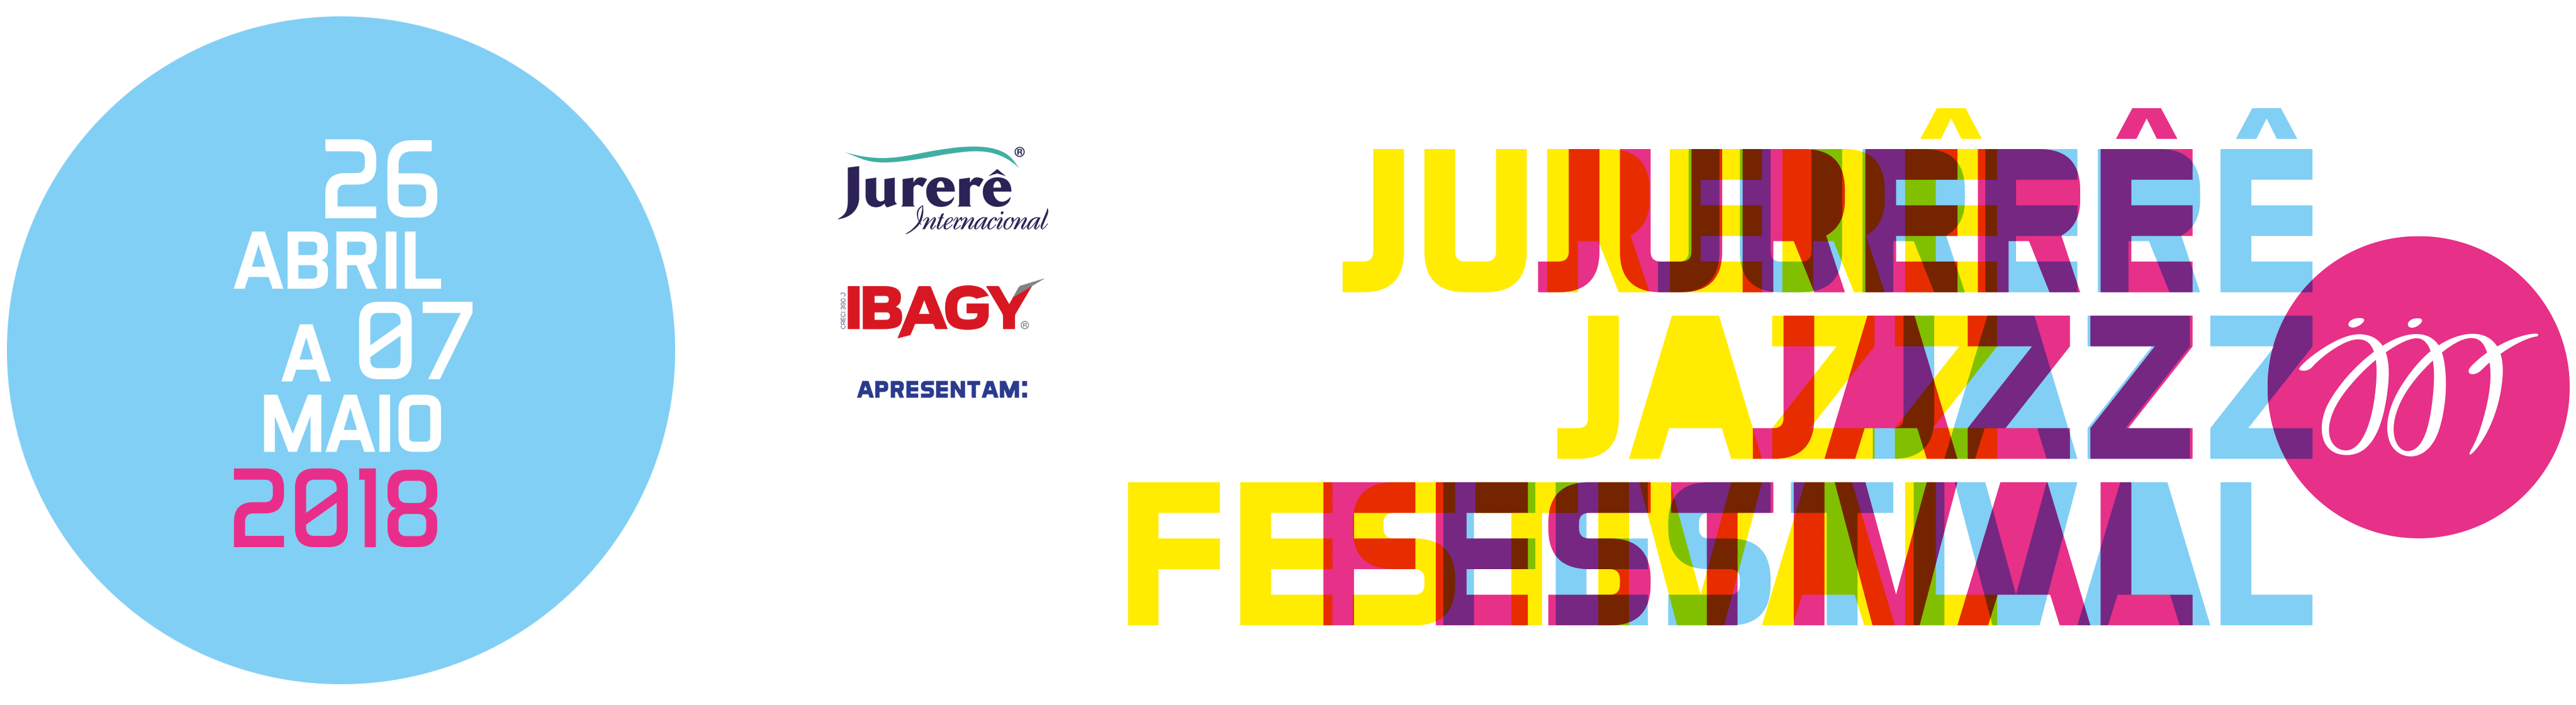 Jurerê Jazz Festival 2018